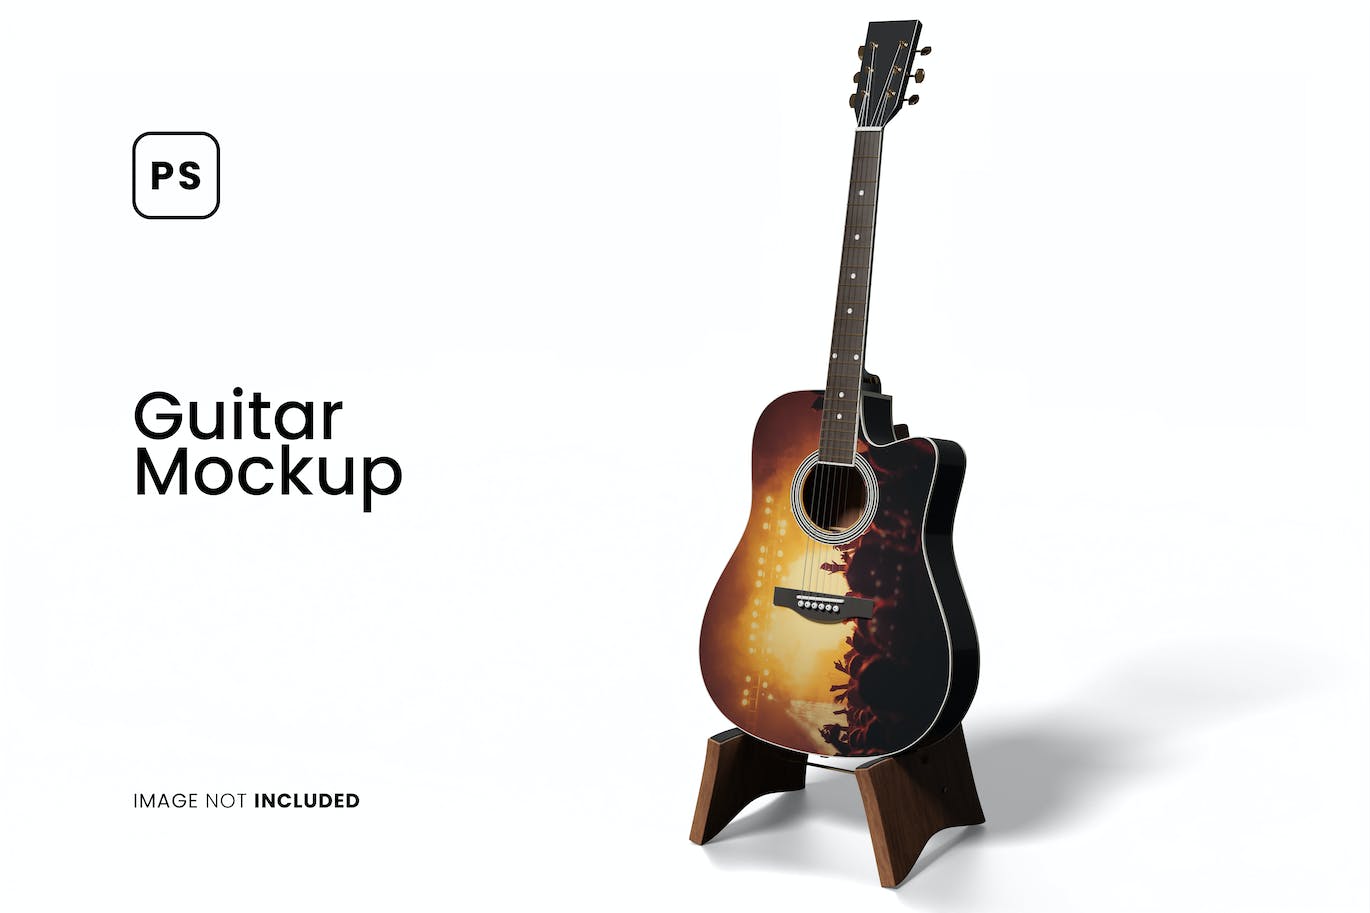 吉他乐器外观设计样机 (PSD)